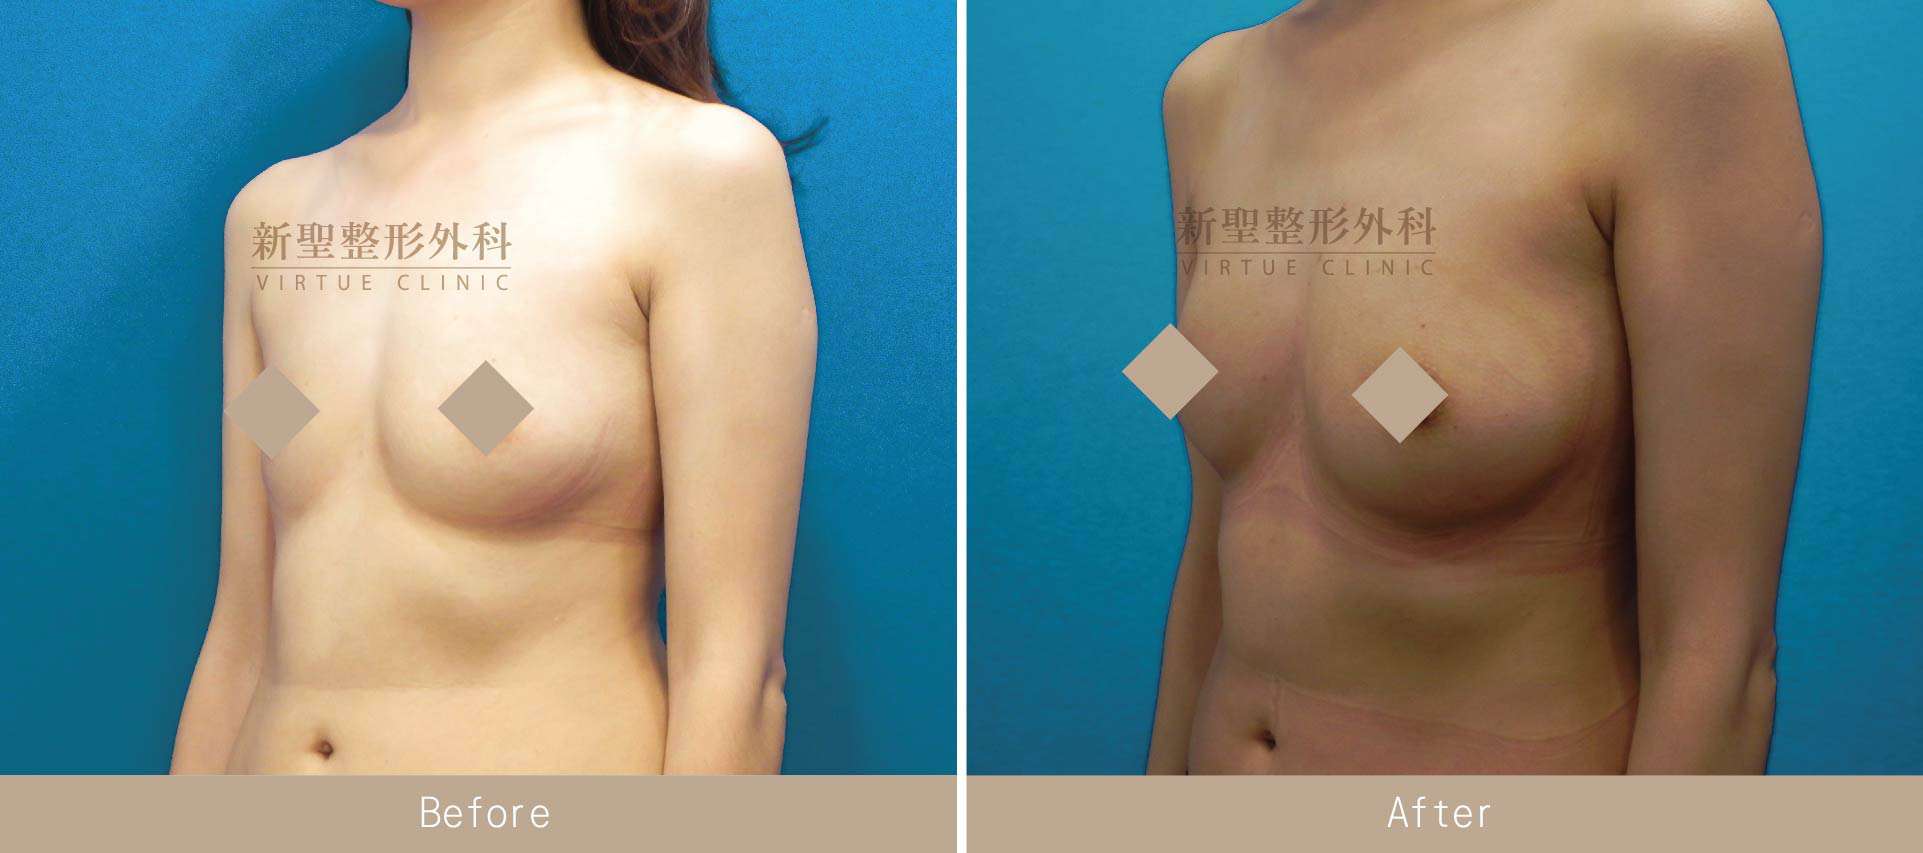 自體脂肪隆乳手術案例照片